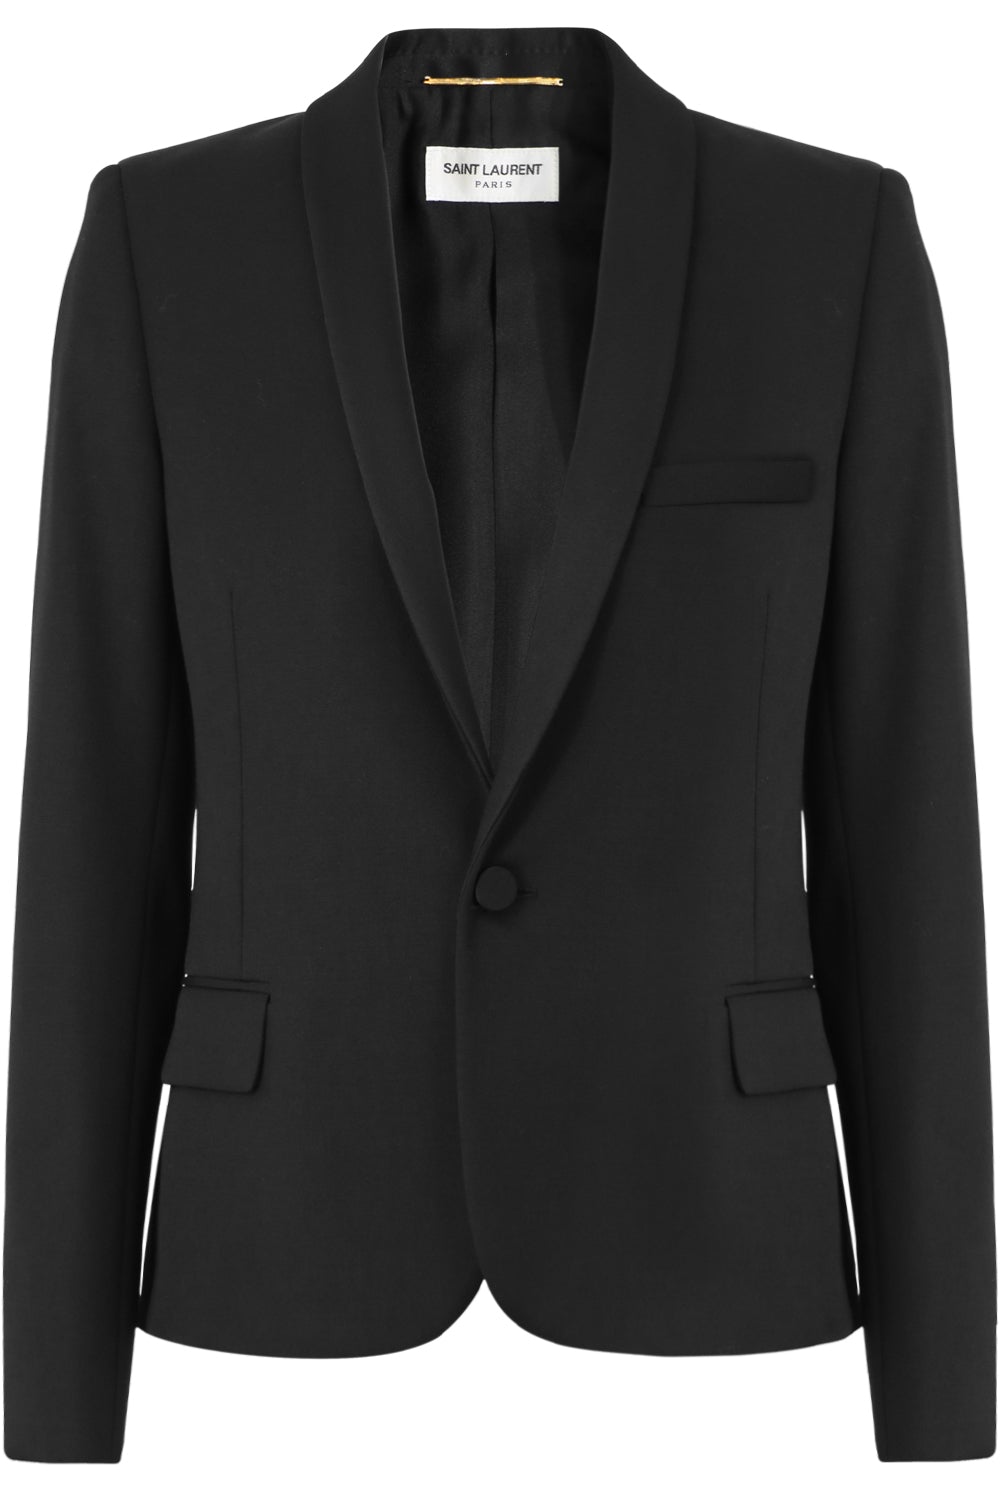 Yves Saint Laurent Jackets & Blazers For Women Australia | Parlour X